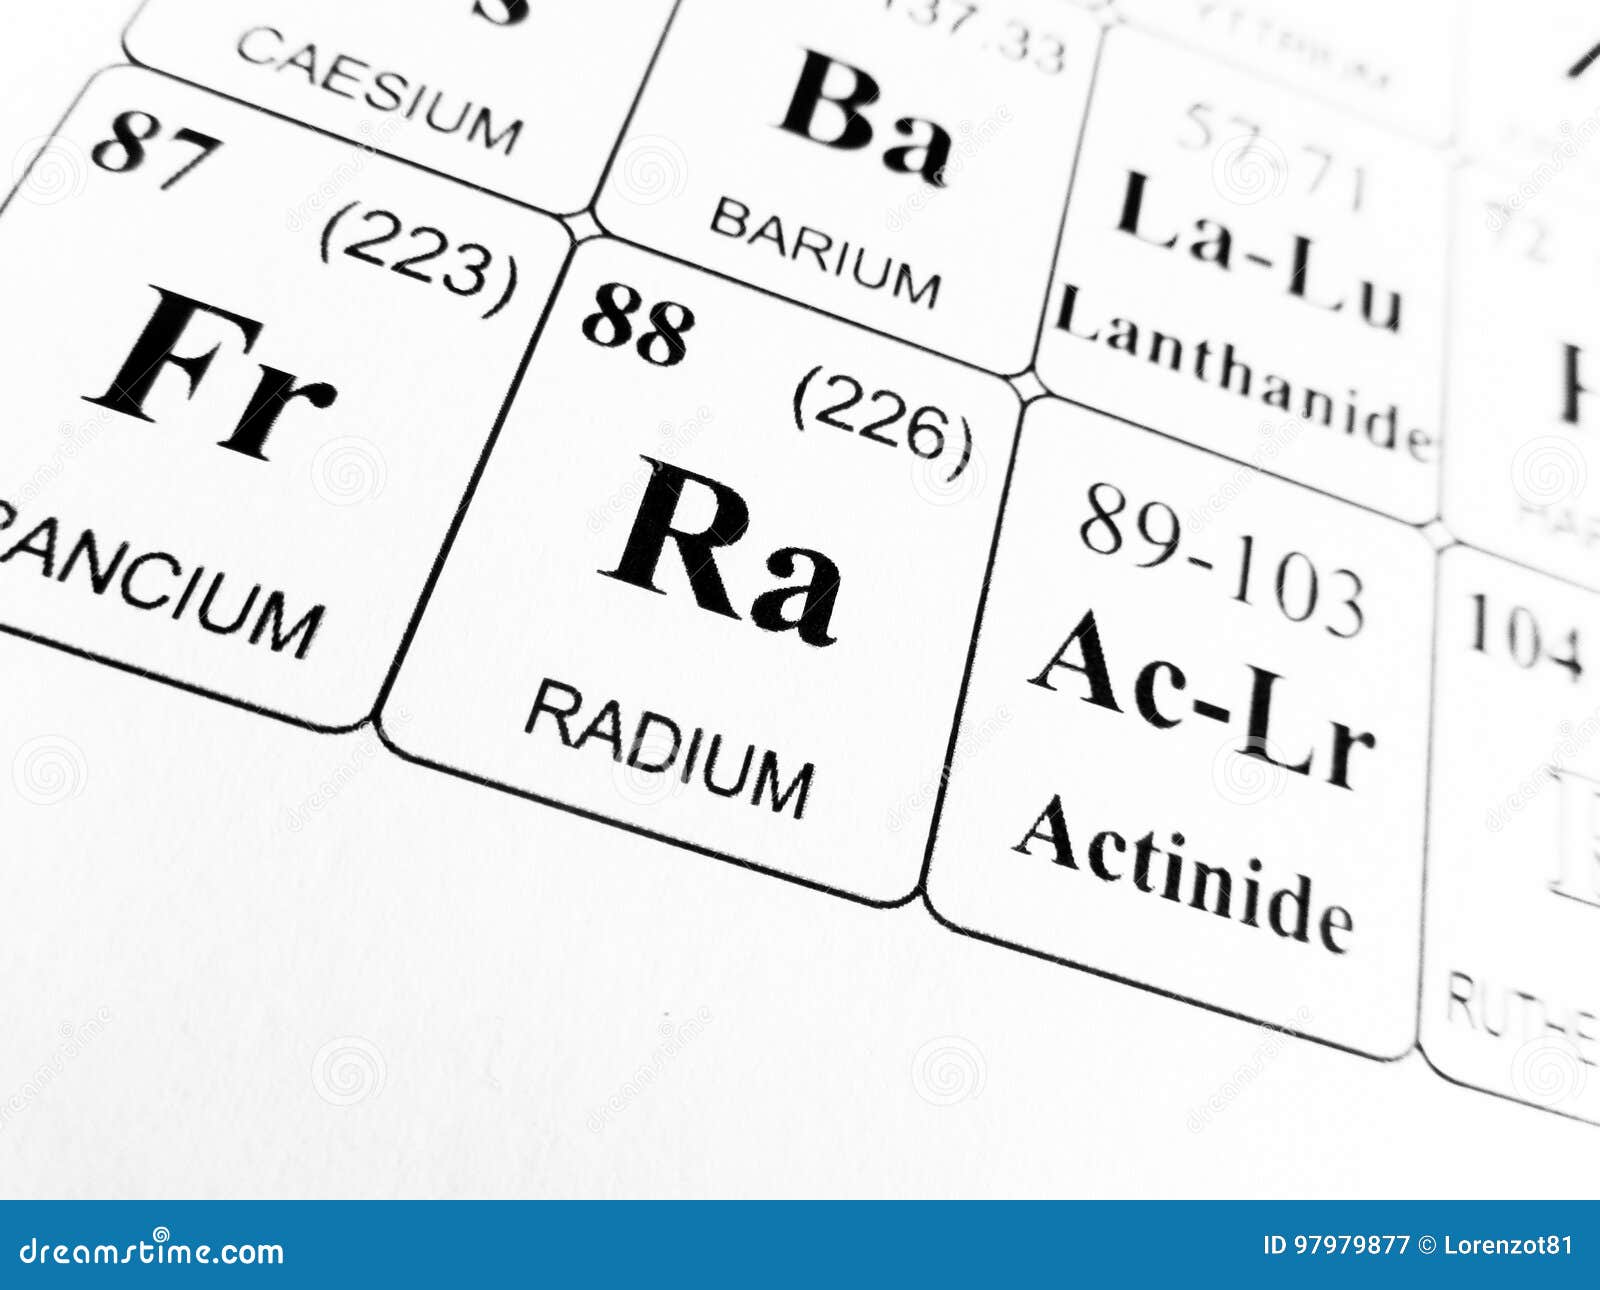 Элемент 104. Radium element. Radium i 30n. Геншин Импакт пиро элемент элемент картинка. Radium биржа.